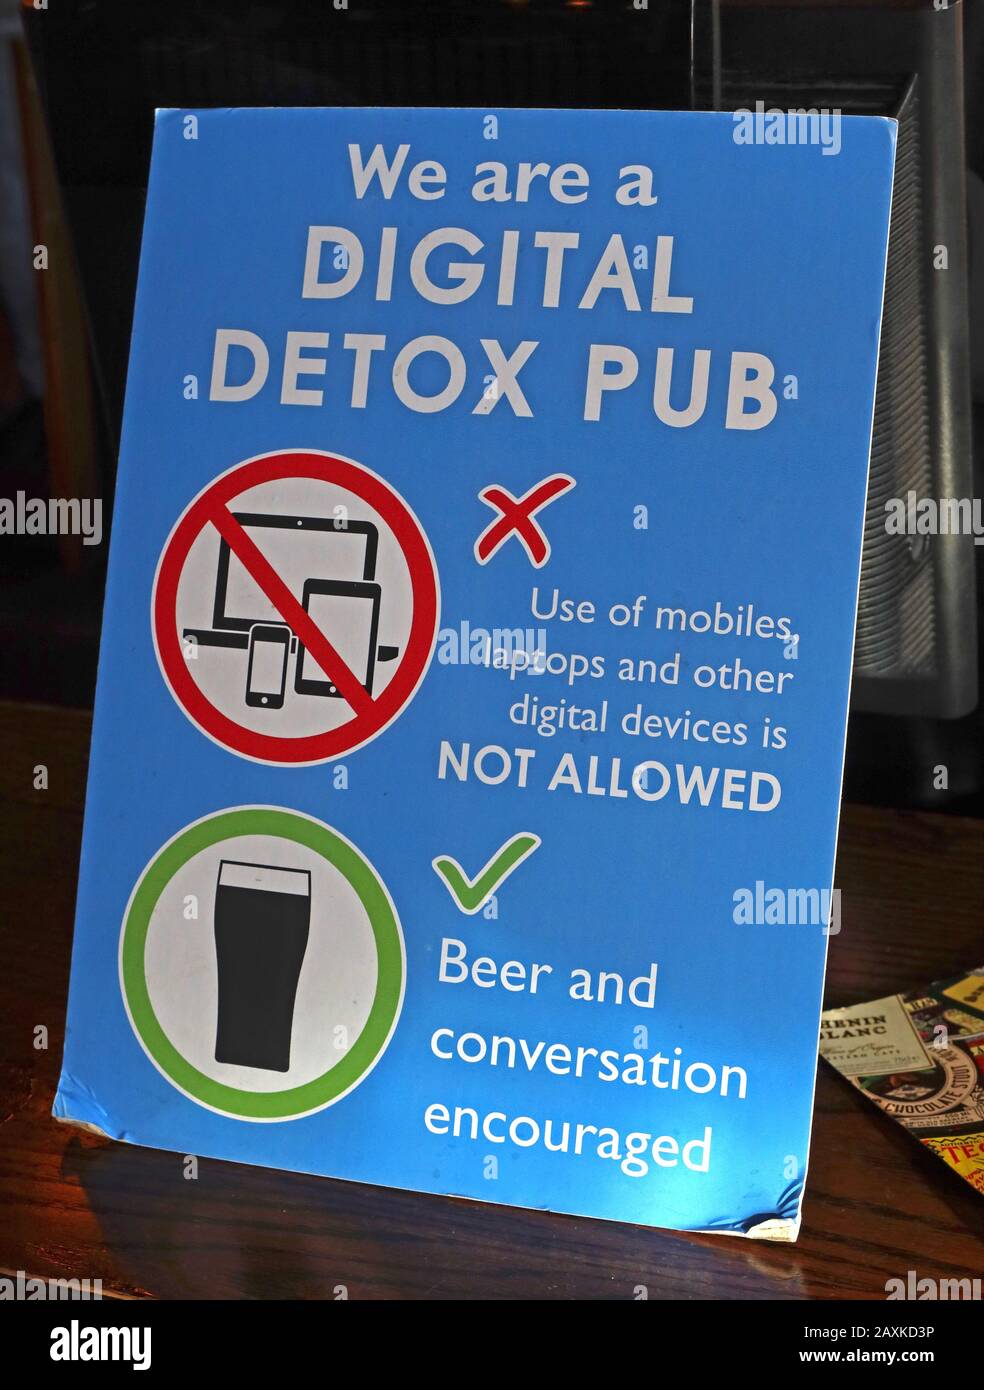 Siamo un pub detox digitale, Sam Smiths, l'uso di cellulari, laptop e altri dispositivi digitali, non consentito, birra e conversazione incoraggiato, Angel Rotherhithe Foto Stock